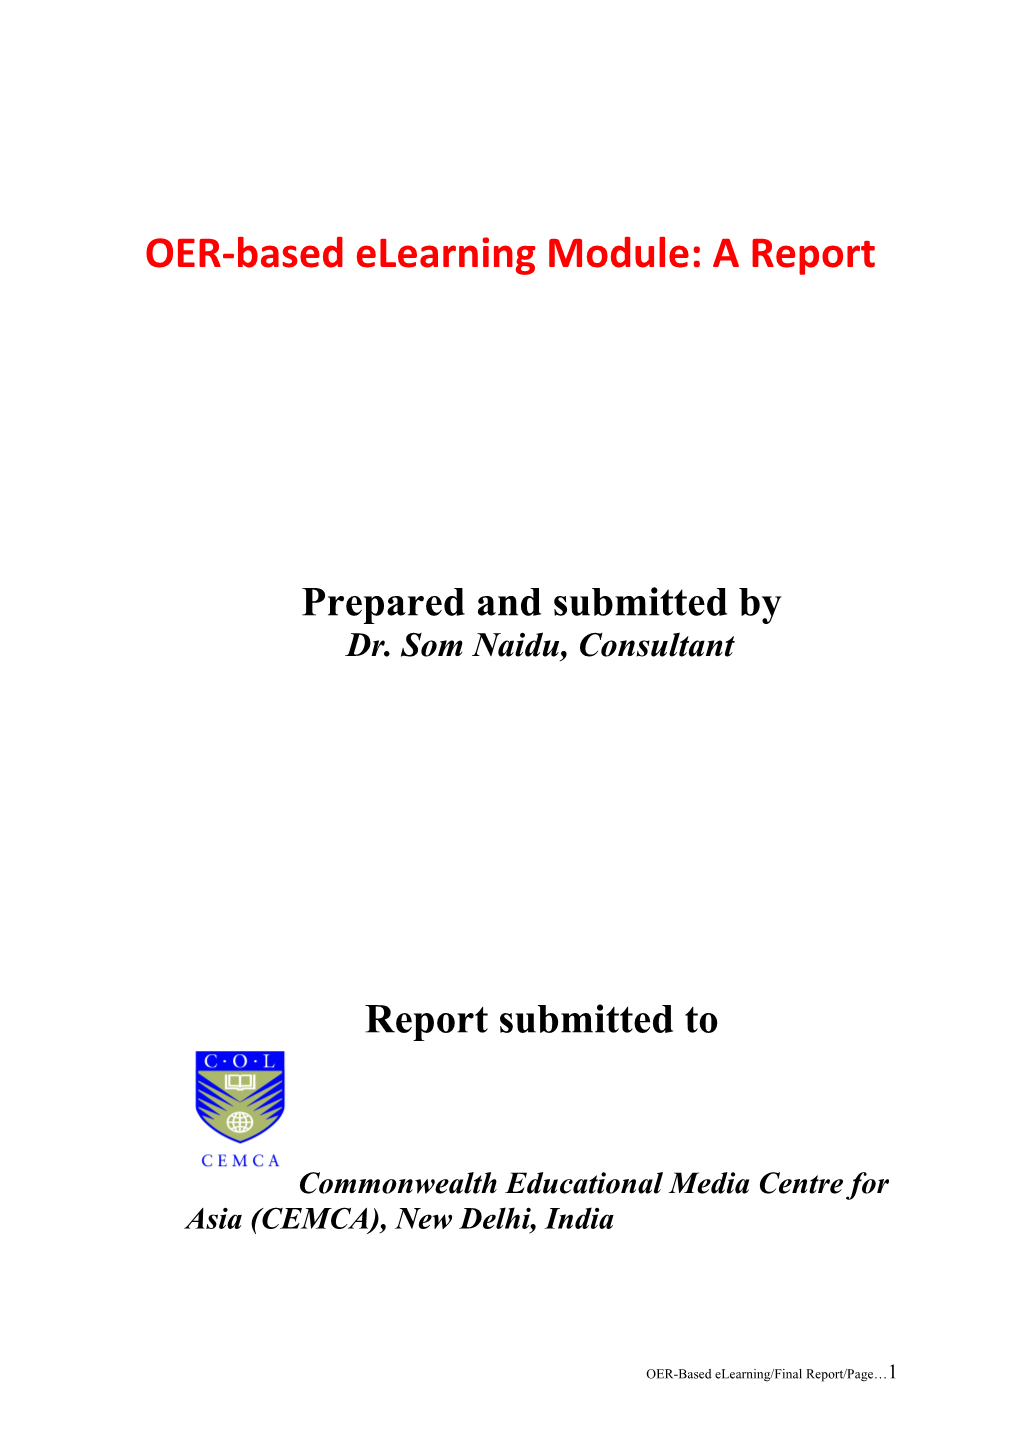 OER-Based Elearning Module: a Report